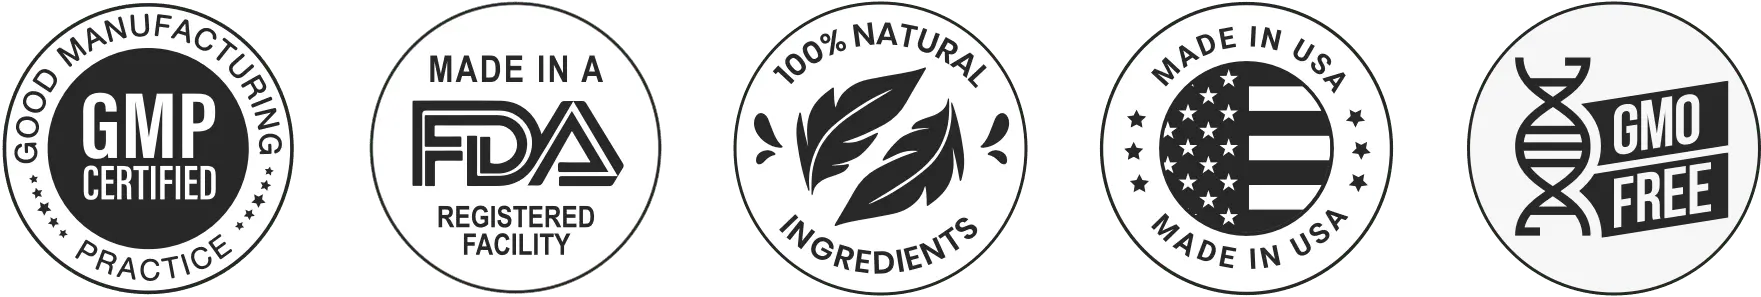 sugar defender certification badge